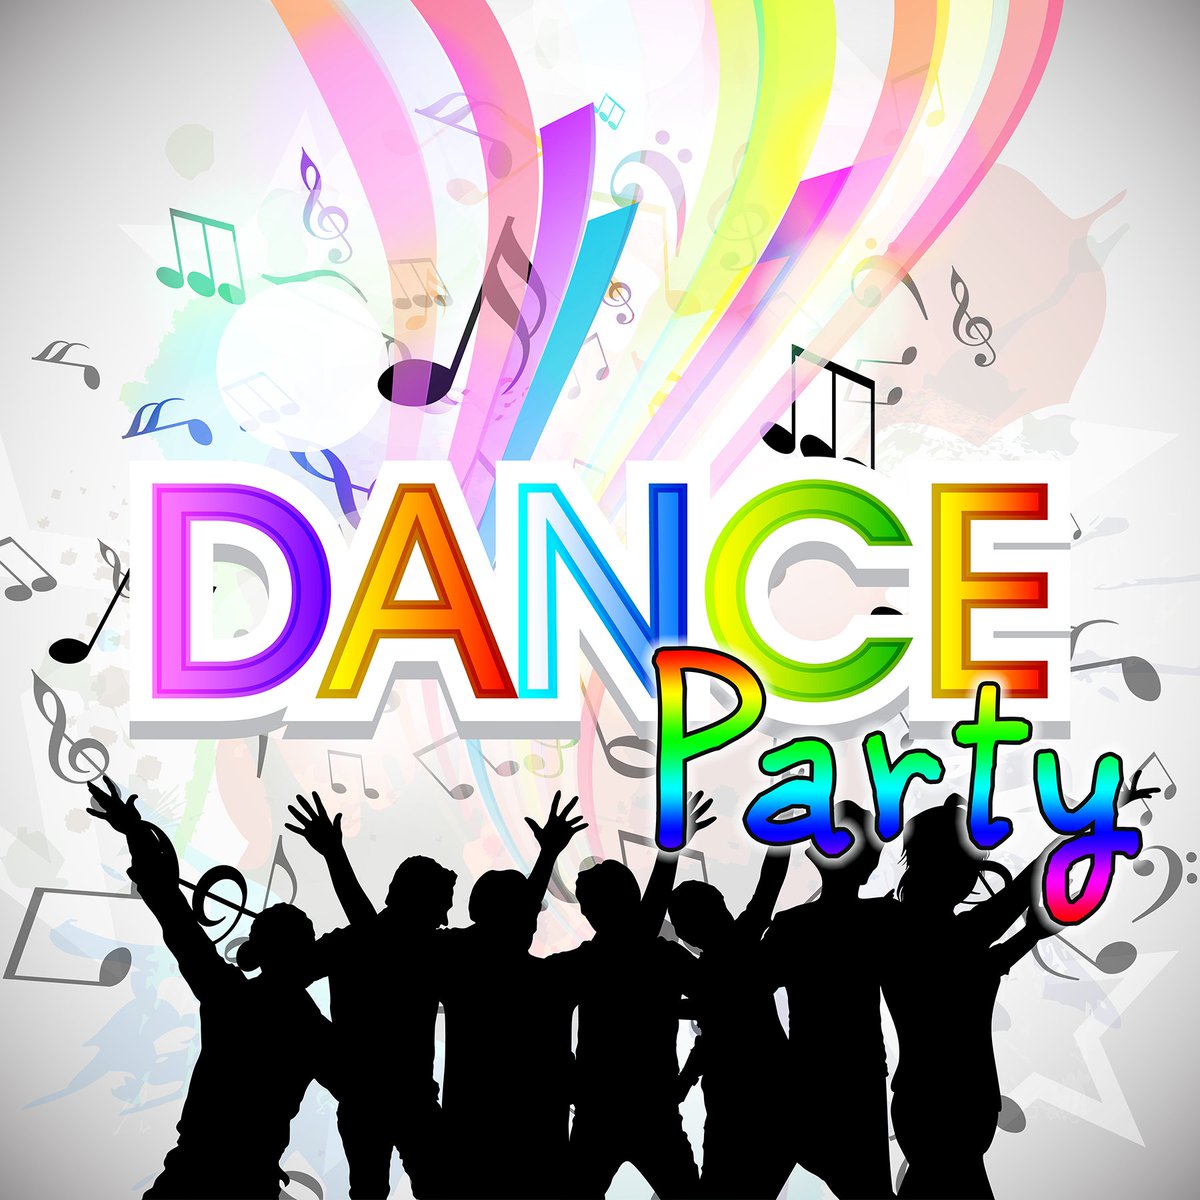 IF IT’S A DANCE FLOOR – IT’S AN #OLDSCHOOLHAPPYFEETDANCEPARTY DANCE FLOOR @KUTX 9-8-9